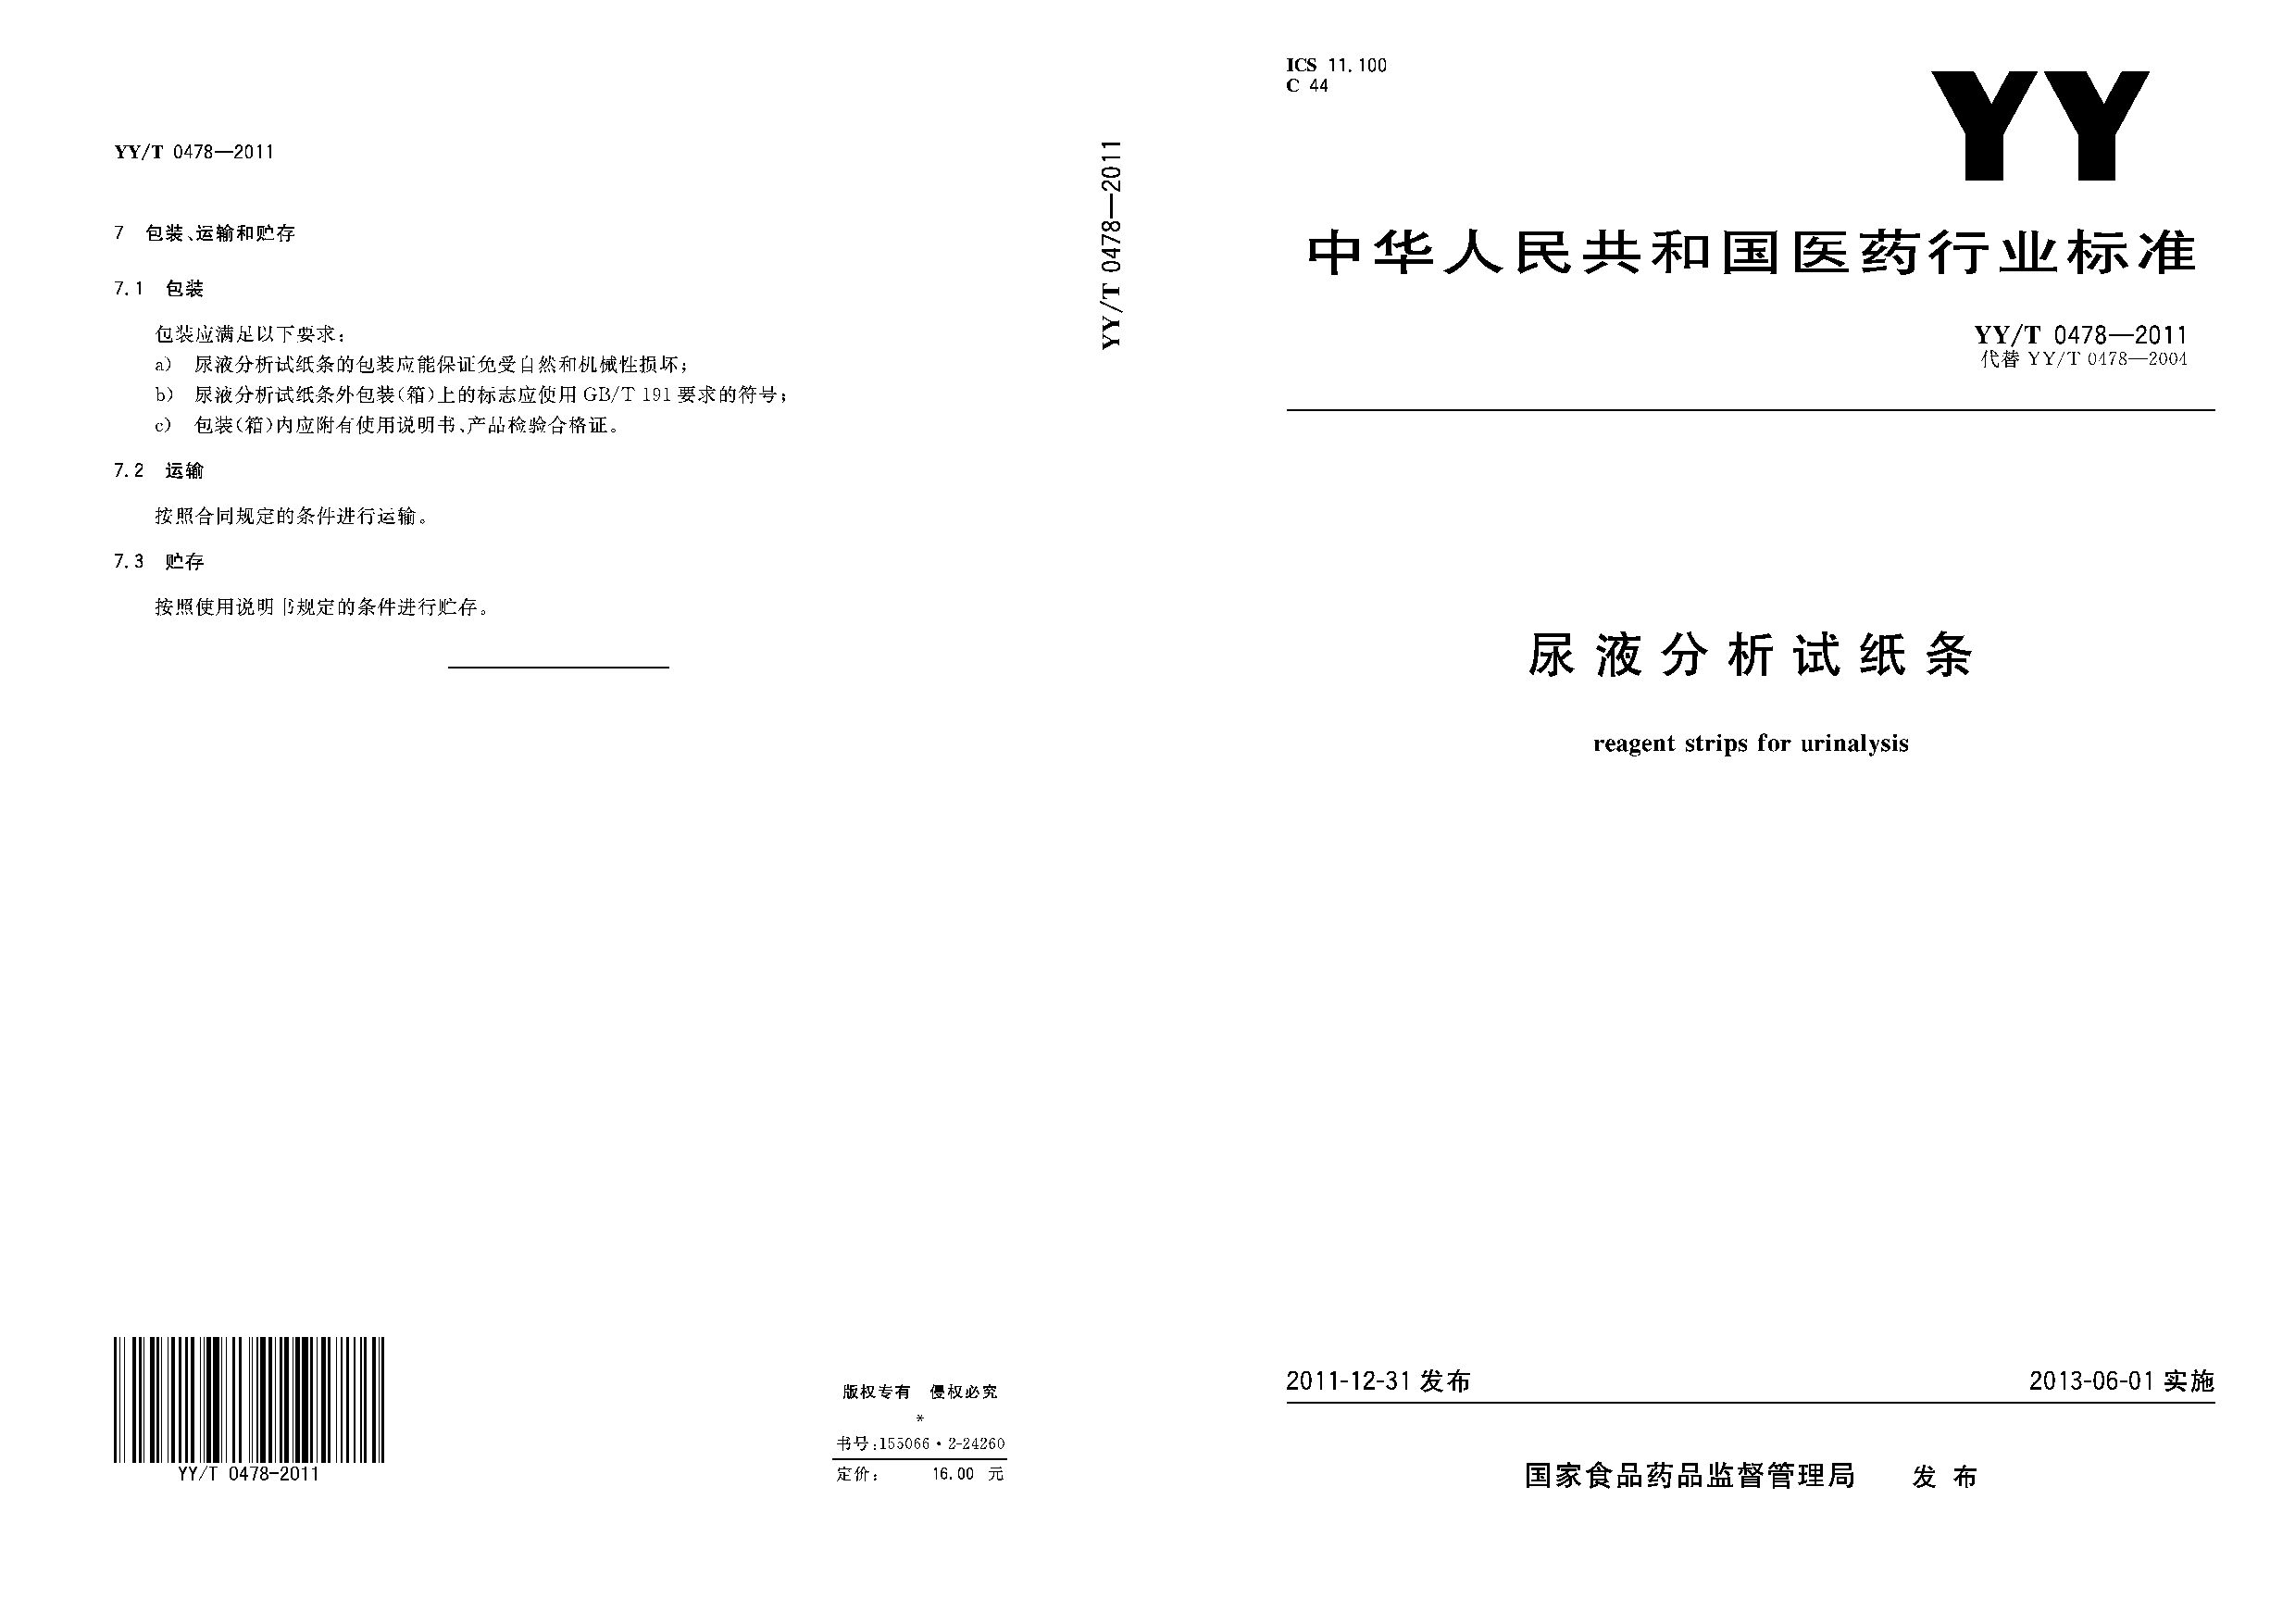 YY/T 0478-2011封面图